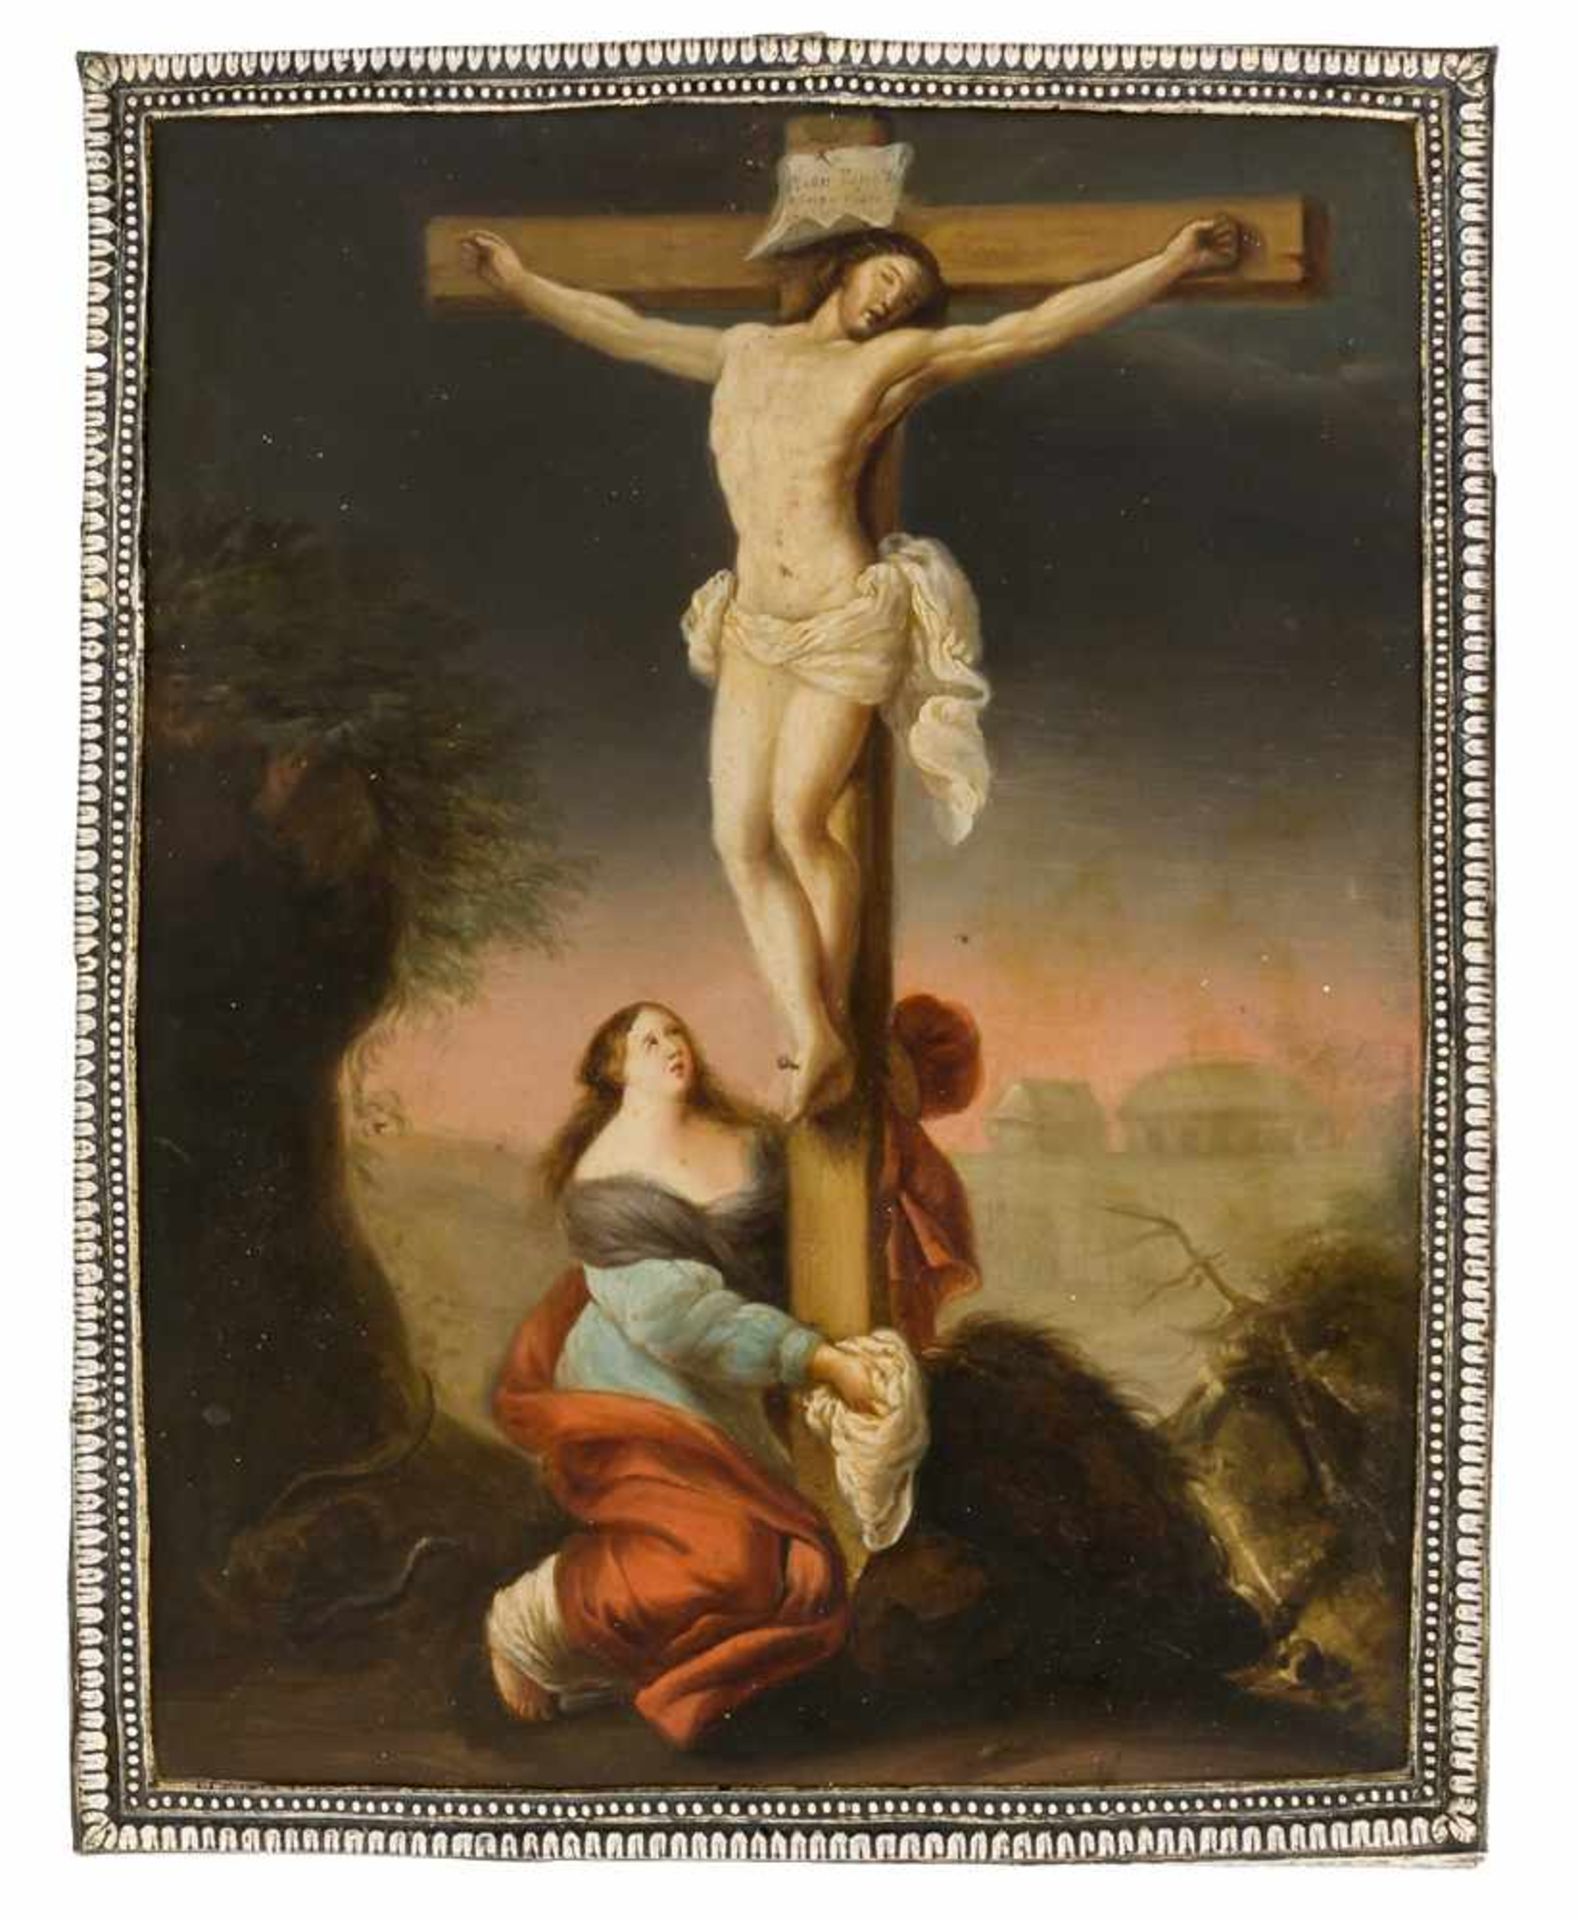 * Kreuzigung Jesu Russische Ikone auf Kupfer, datiert 1760, mit Silberbasma, Moskau 1814 Beschau-